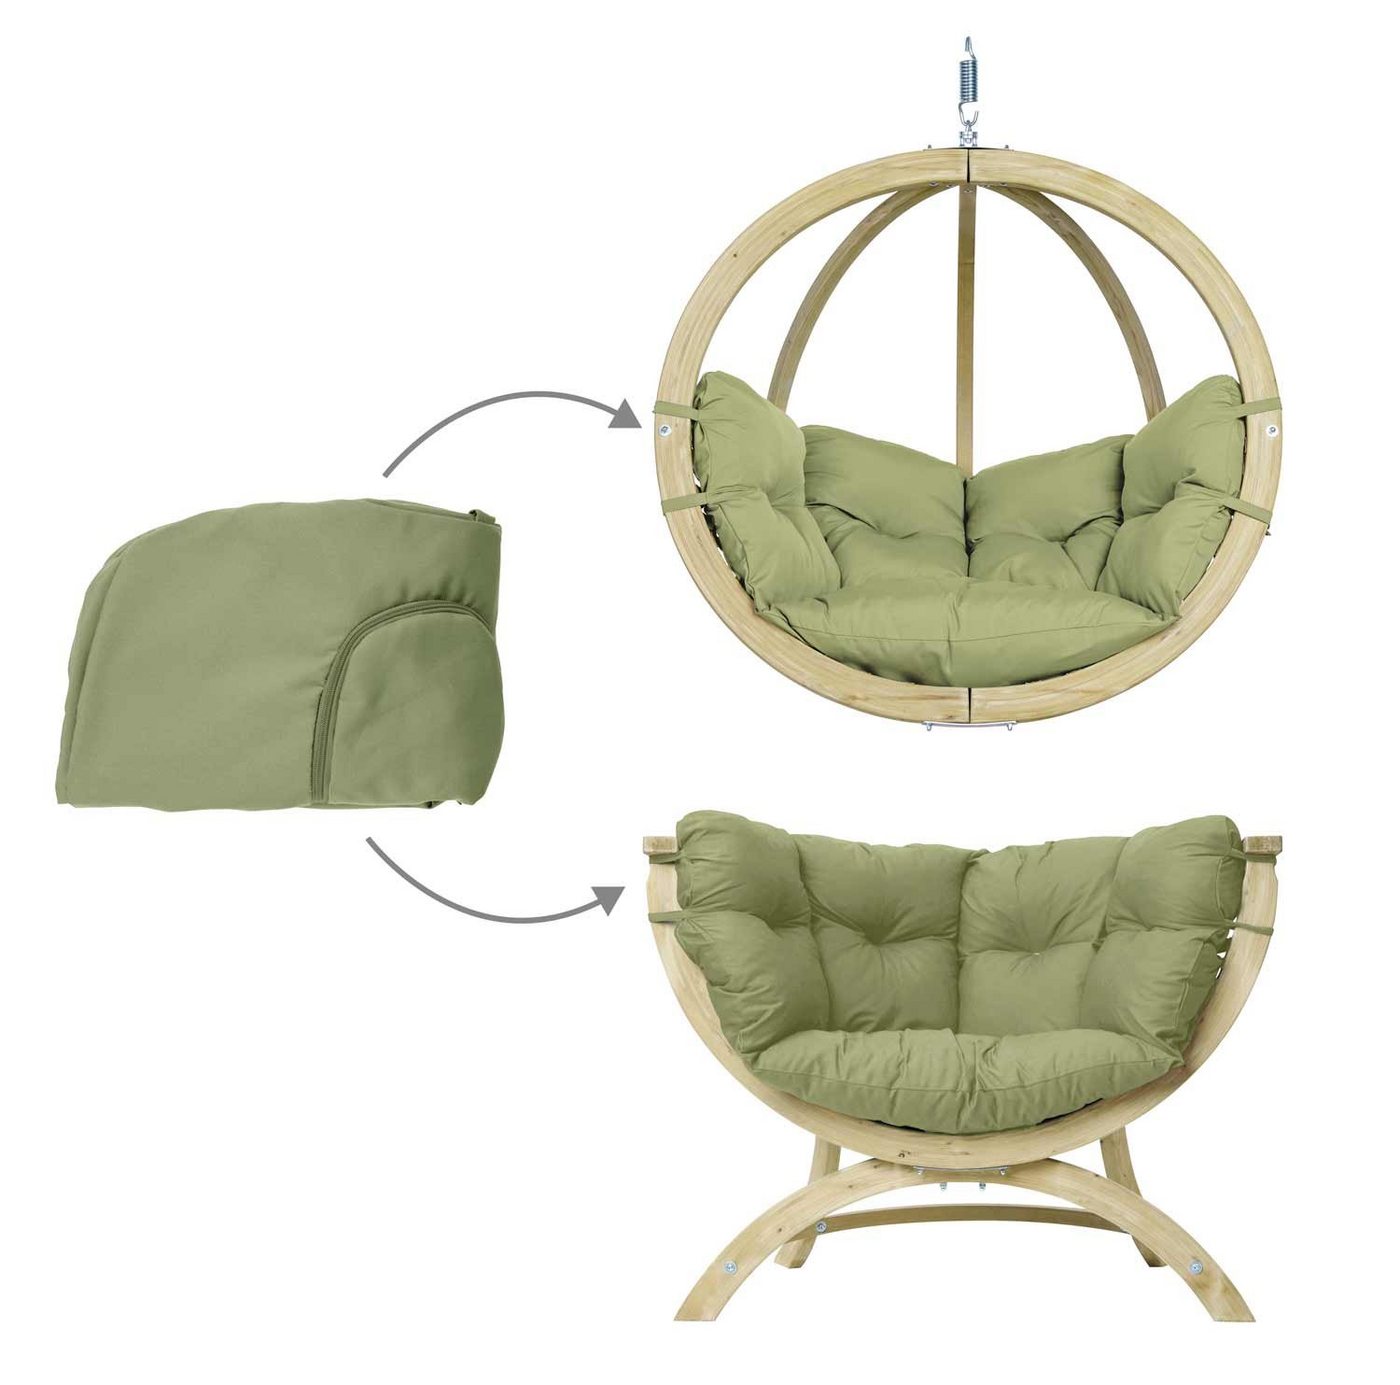 Kissenbezug für Hängesessel Globo Chair & Siena Due, Amazonas von Amazonas